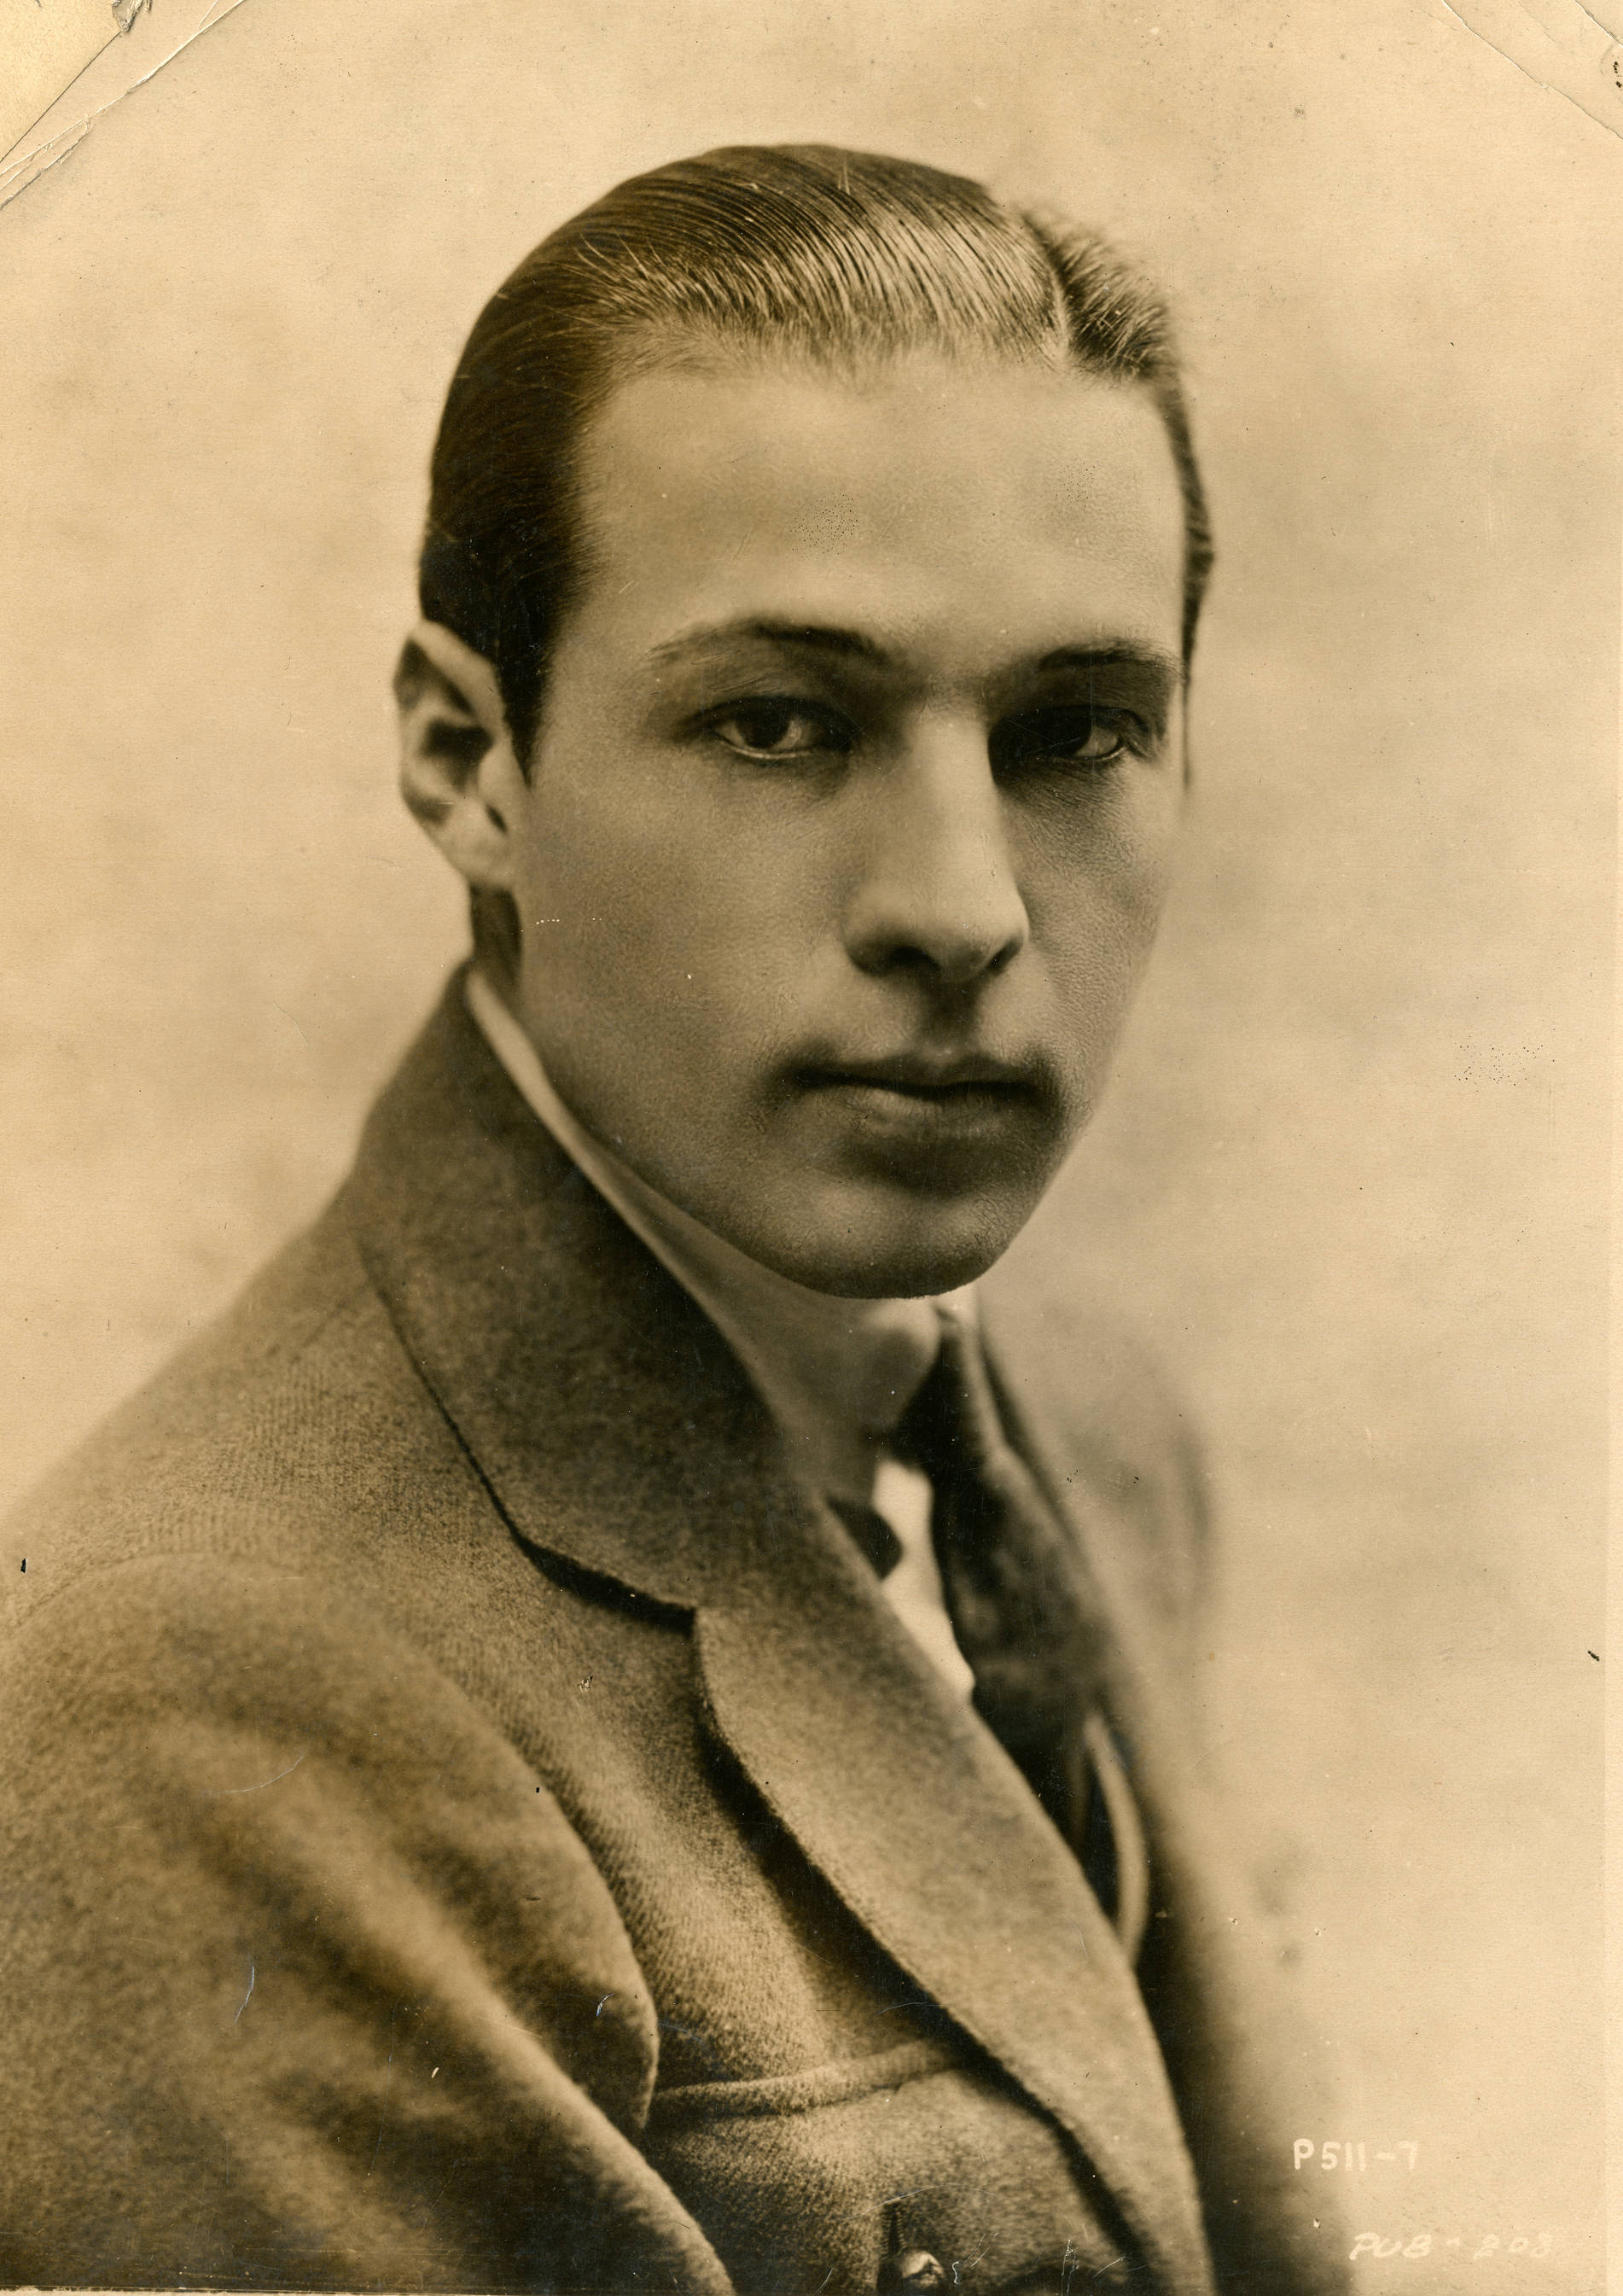 File:Rudolph Valentino, actor (SAYRE - Wikimedia